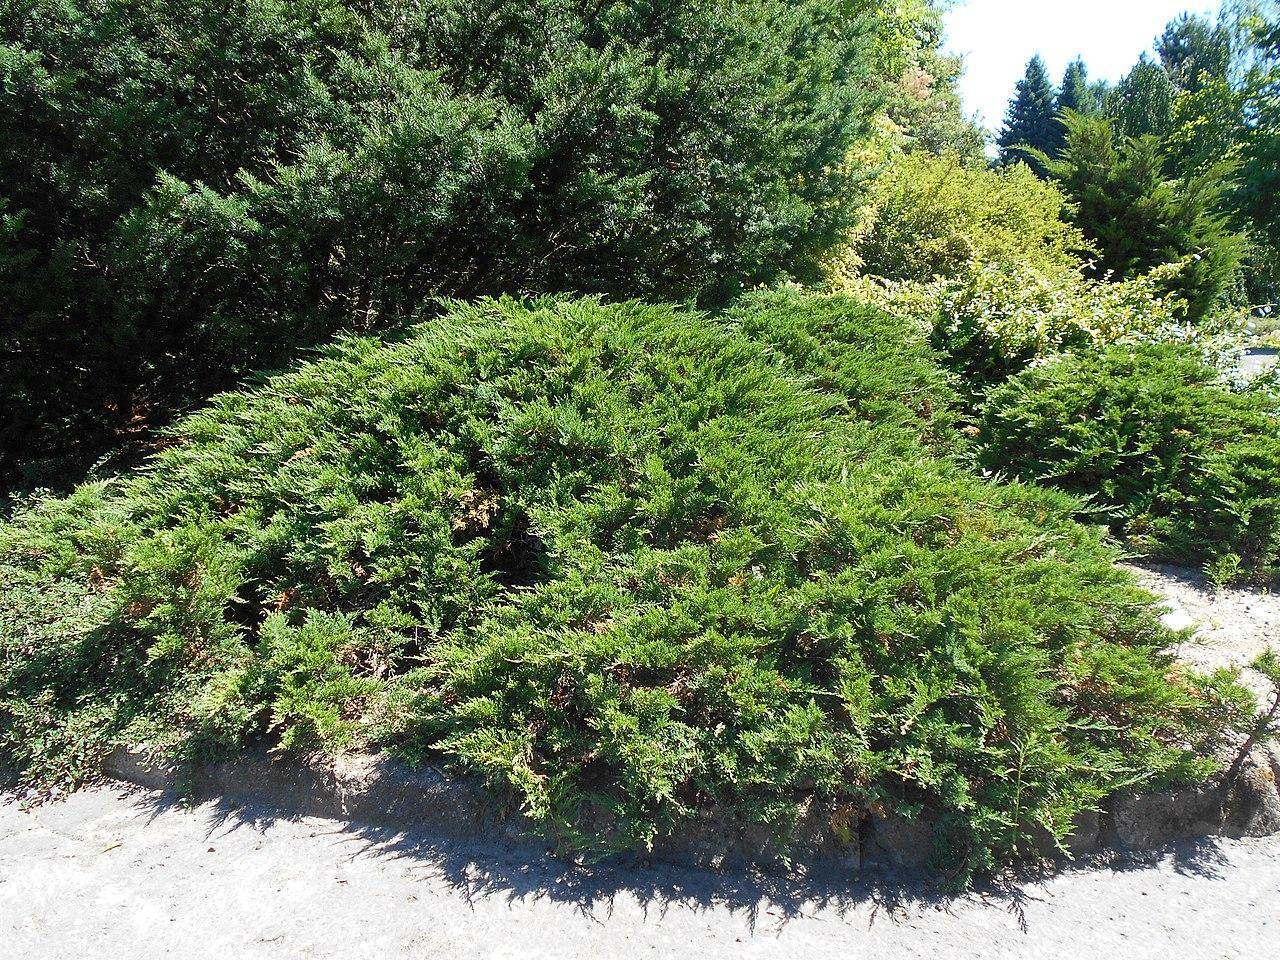 Можжевельник казацкий тамарисцифолия (juniperus sabina tamariscifolia)